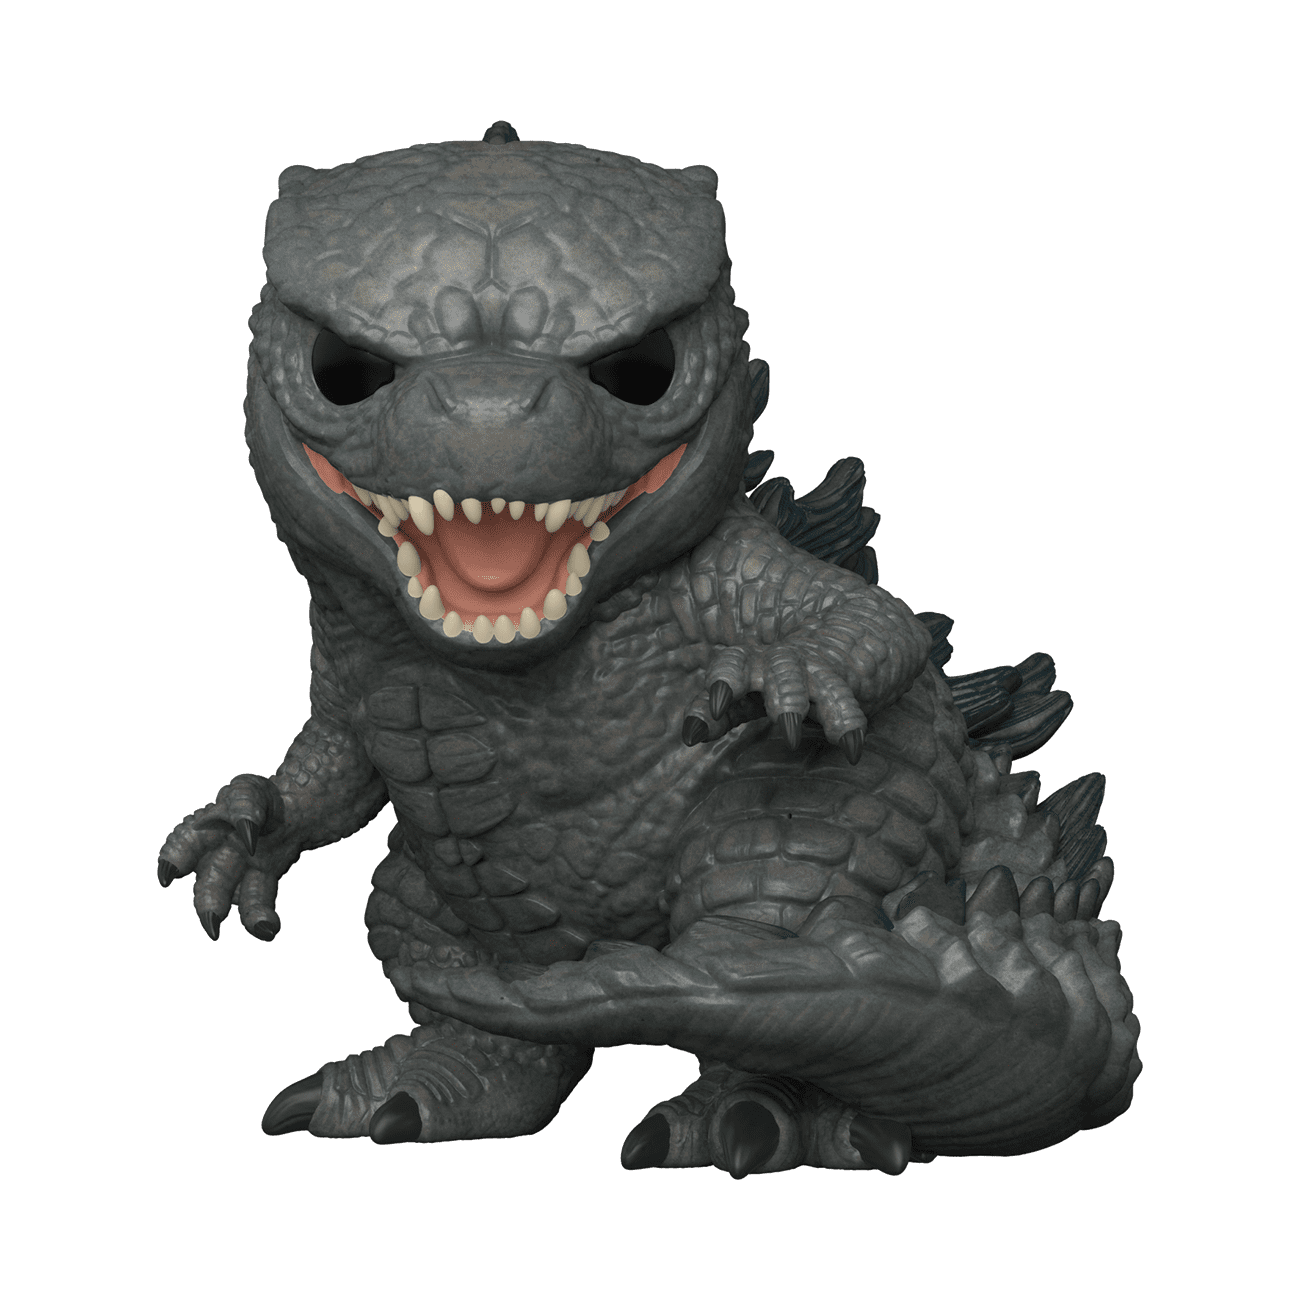 Funko POP! Movies: Godzilla vs. Kong - Godzilla, 3.75 inches tall